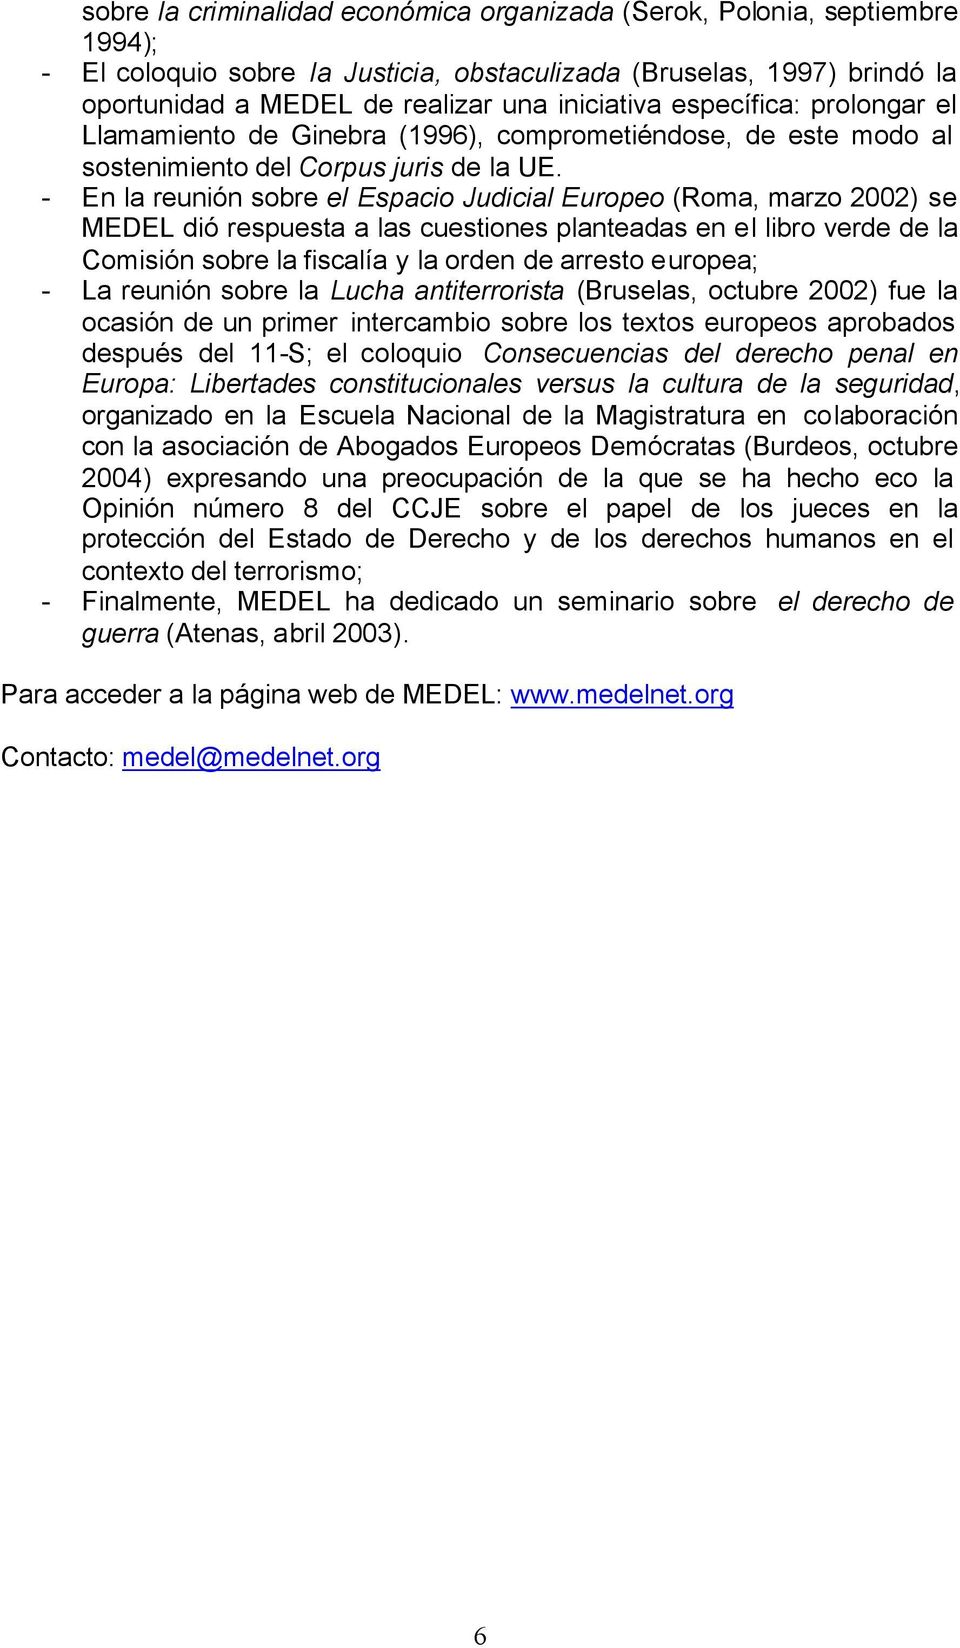 - En la reunión sobre el Espacio Judicial Europeo (Roma, marzo 2002) se MEDEL dió respuesta a las cuestiones planteadas en el libro verde de la Comisión sobre la fiscalía y la orden de arresto